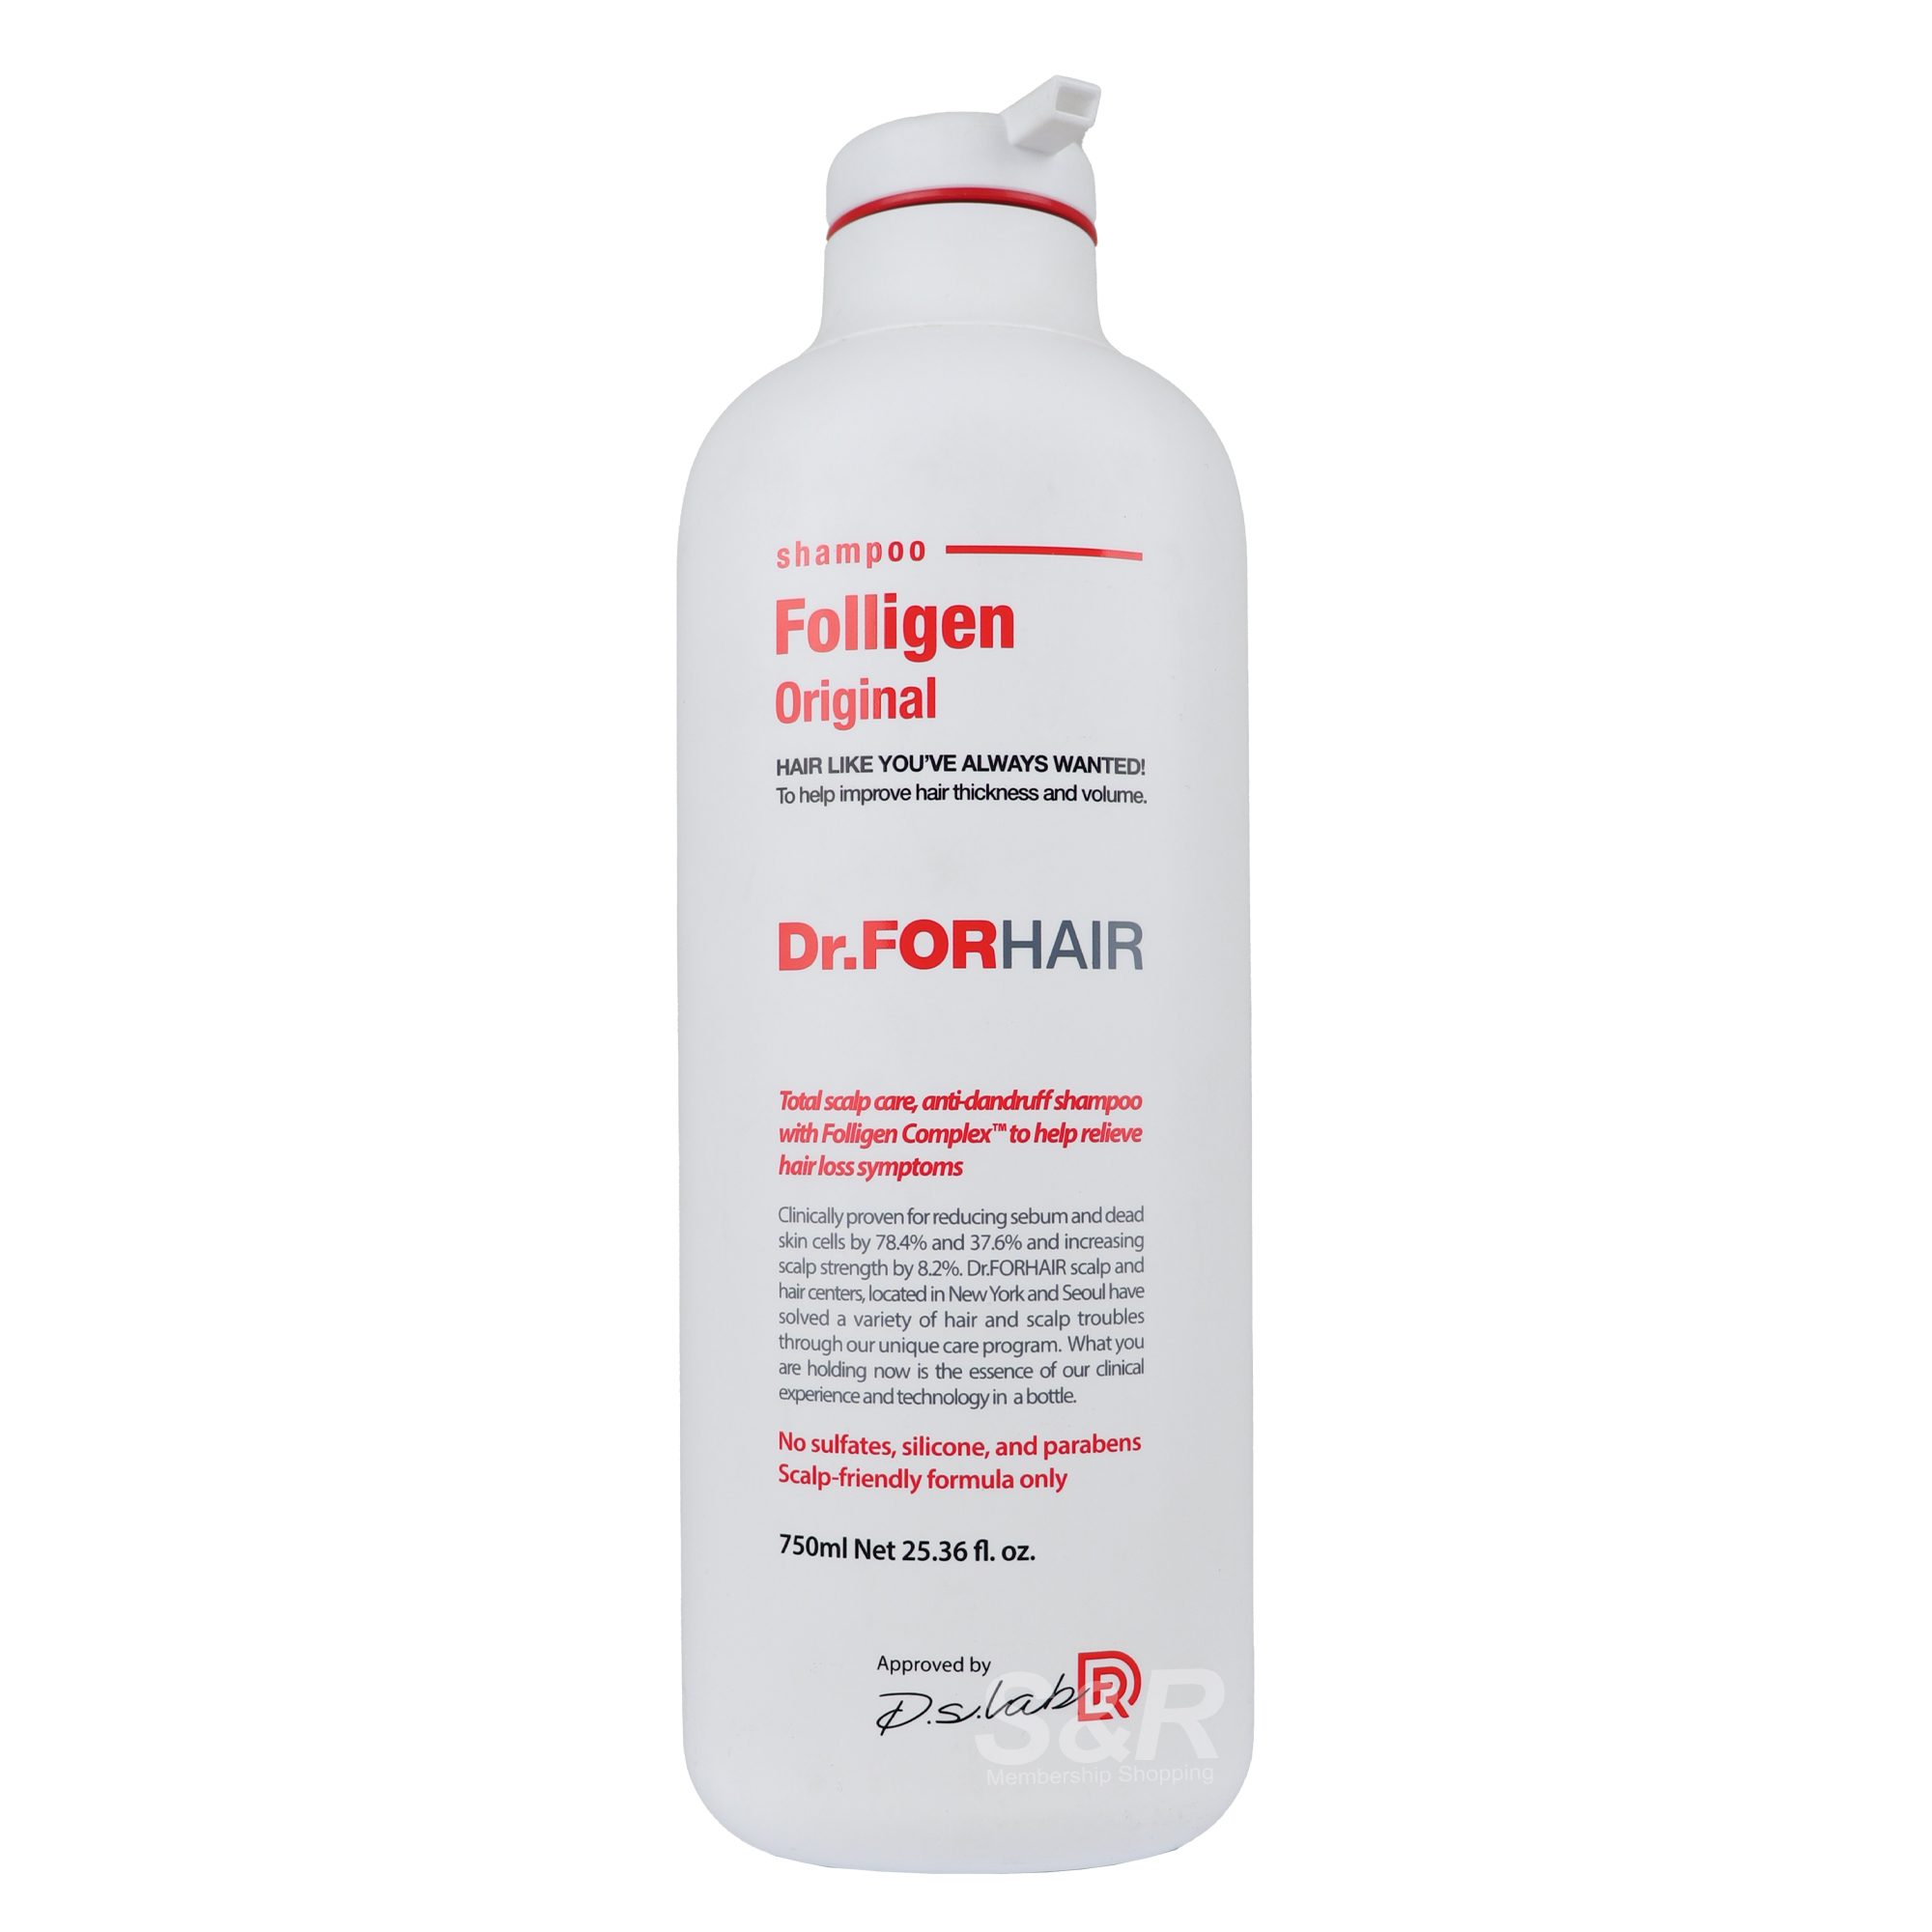 Dr.FORHAIR Original Folligen Shampoo 750mL